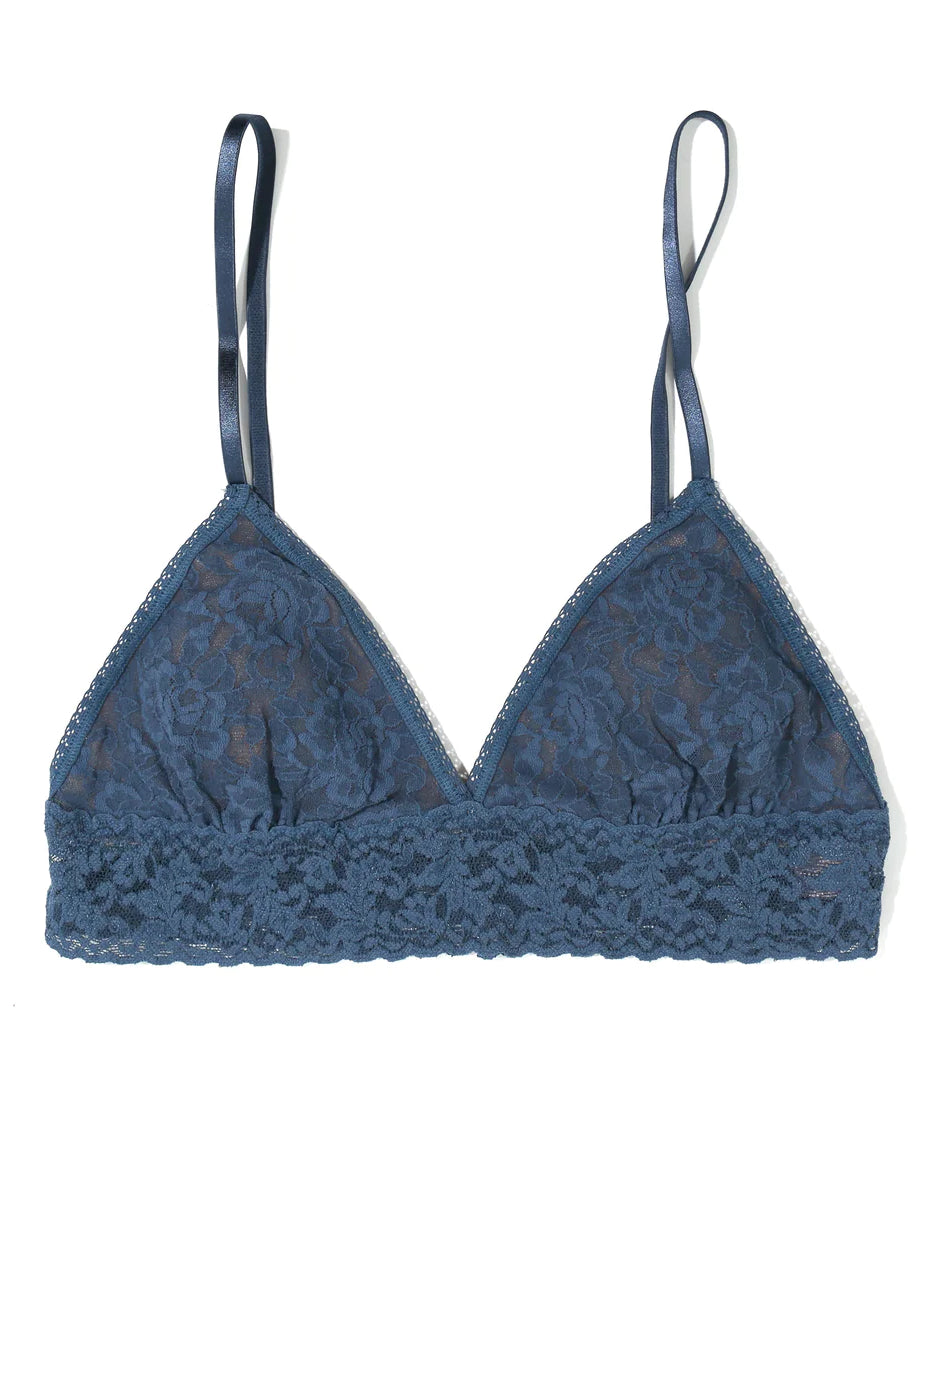 Signature Lace Padded Triangle Bralette - Deep Waters - Flirt! Luxe Lingerie & Sleepwear